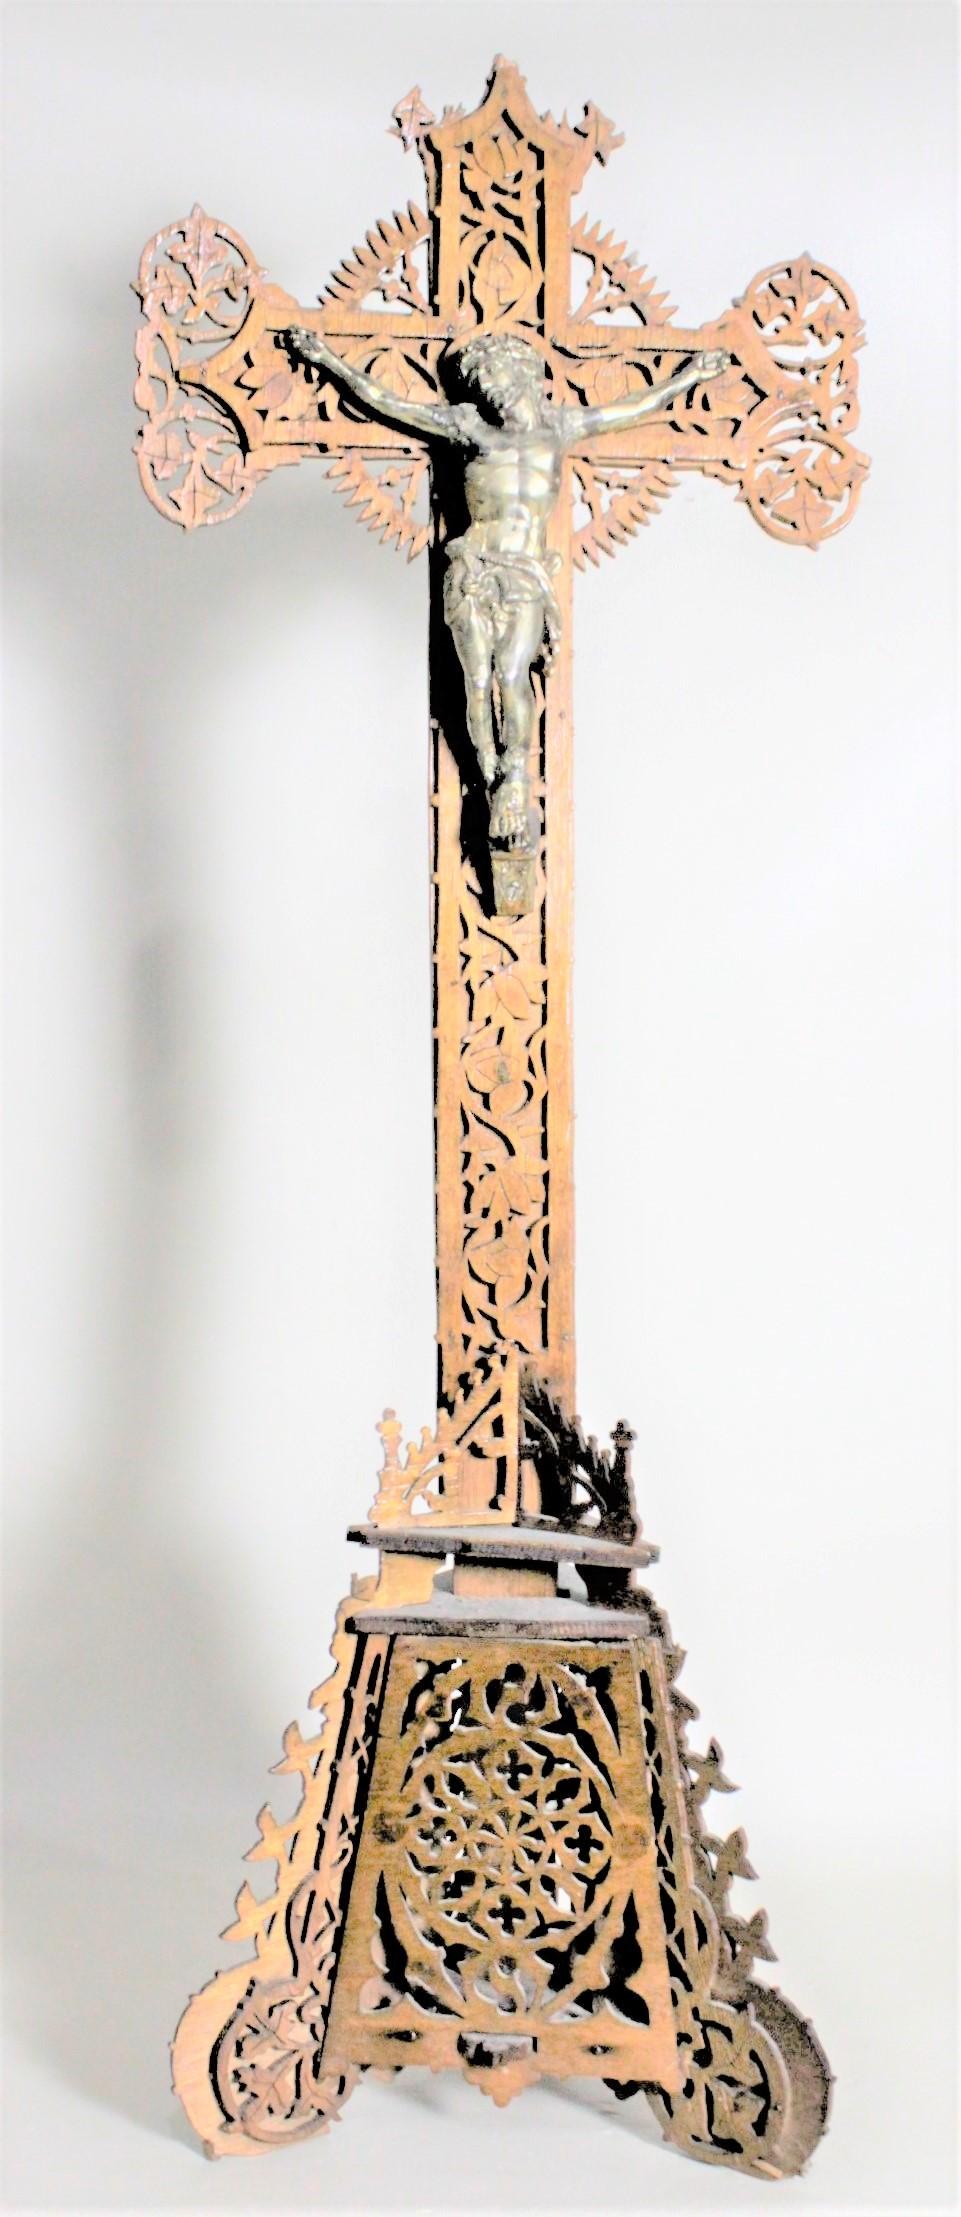 Dieses äußerst detailreiche und kunstvoll handgefertigte Volkskunst-Kruzifix aus Holz ist unsigniert, wurde aber vermutlich um 1920 in Osteuropa, möglicherweise in Österreich, hergestellt. Das Kreuz und der Ständer sind beide kunstvoll aus Weichholz